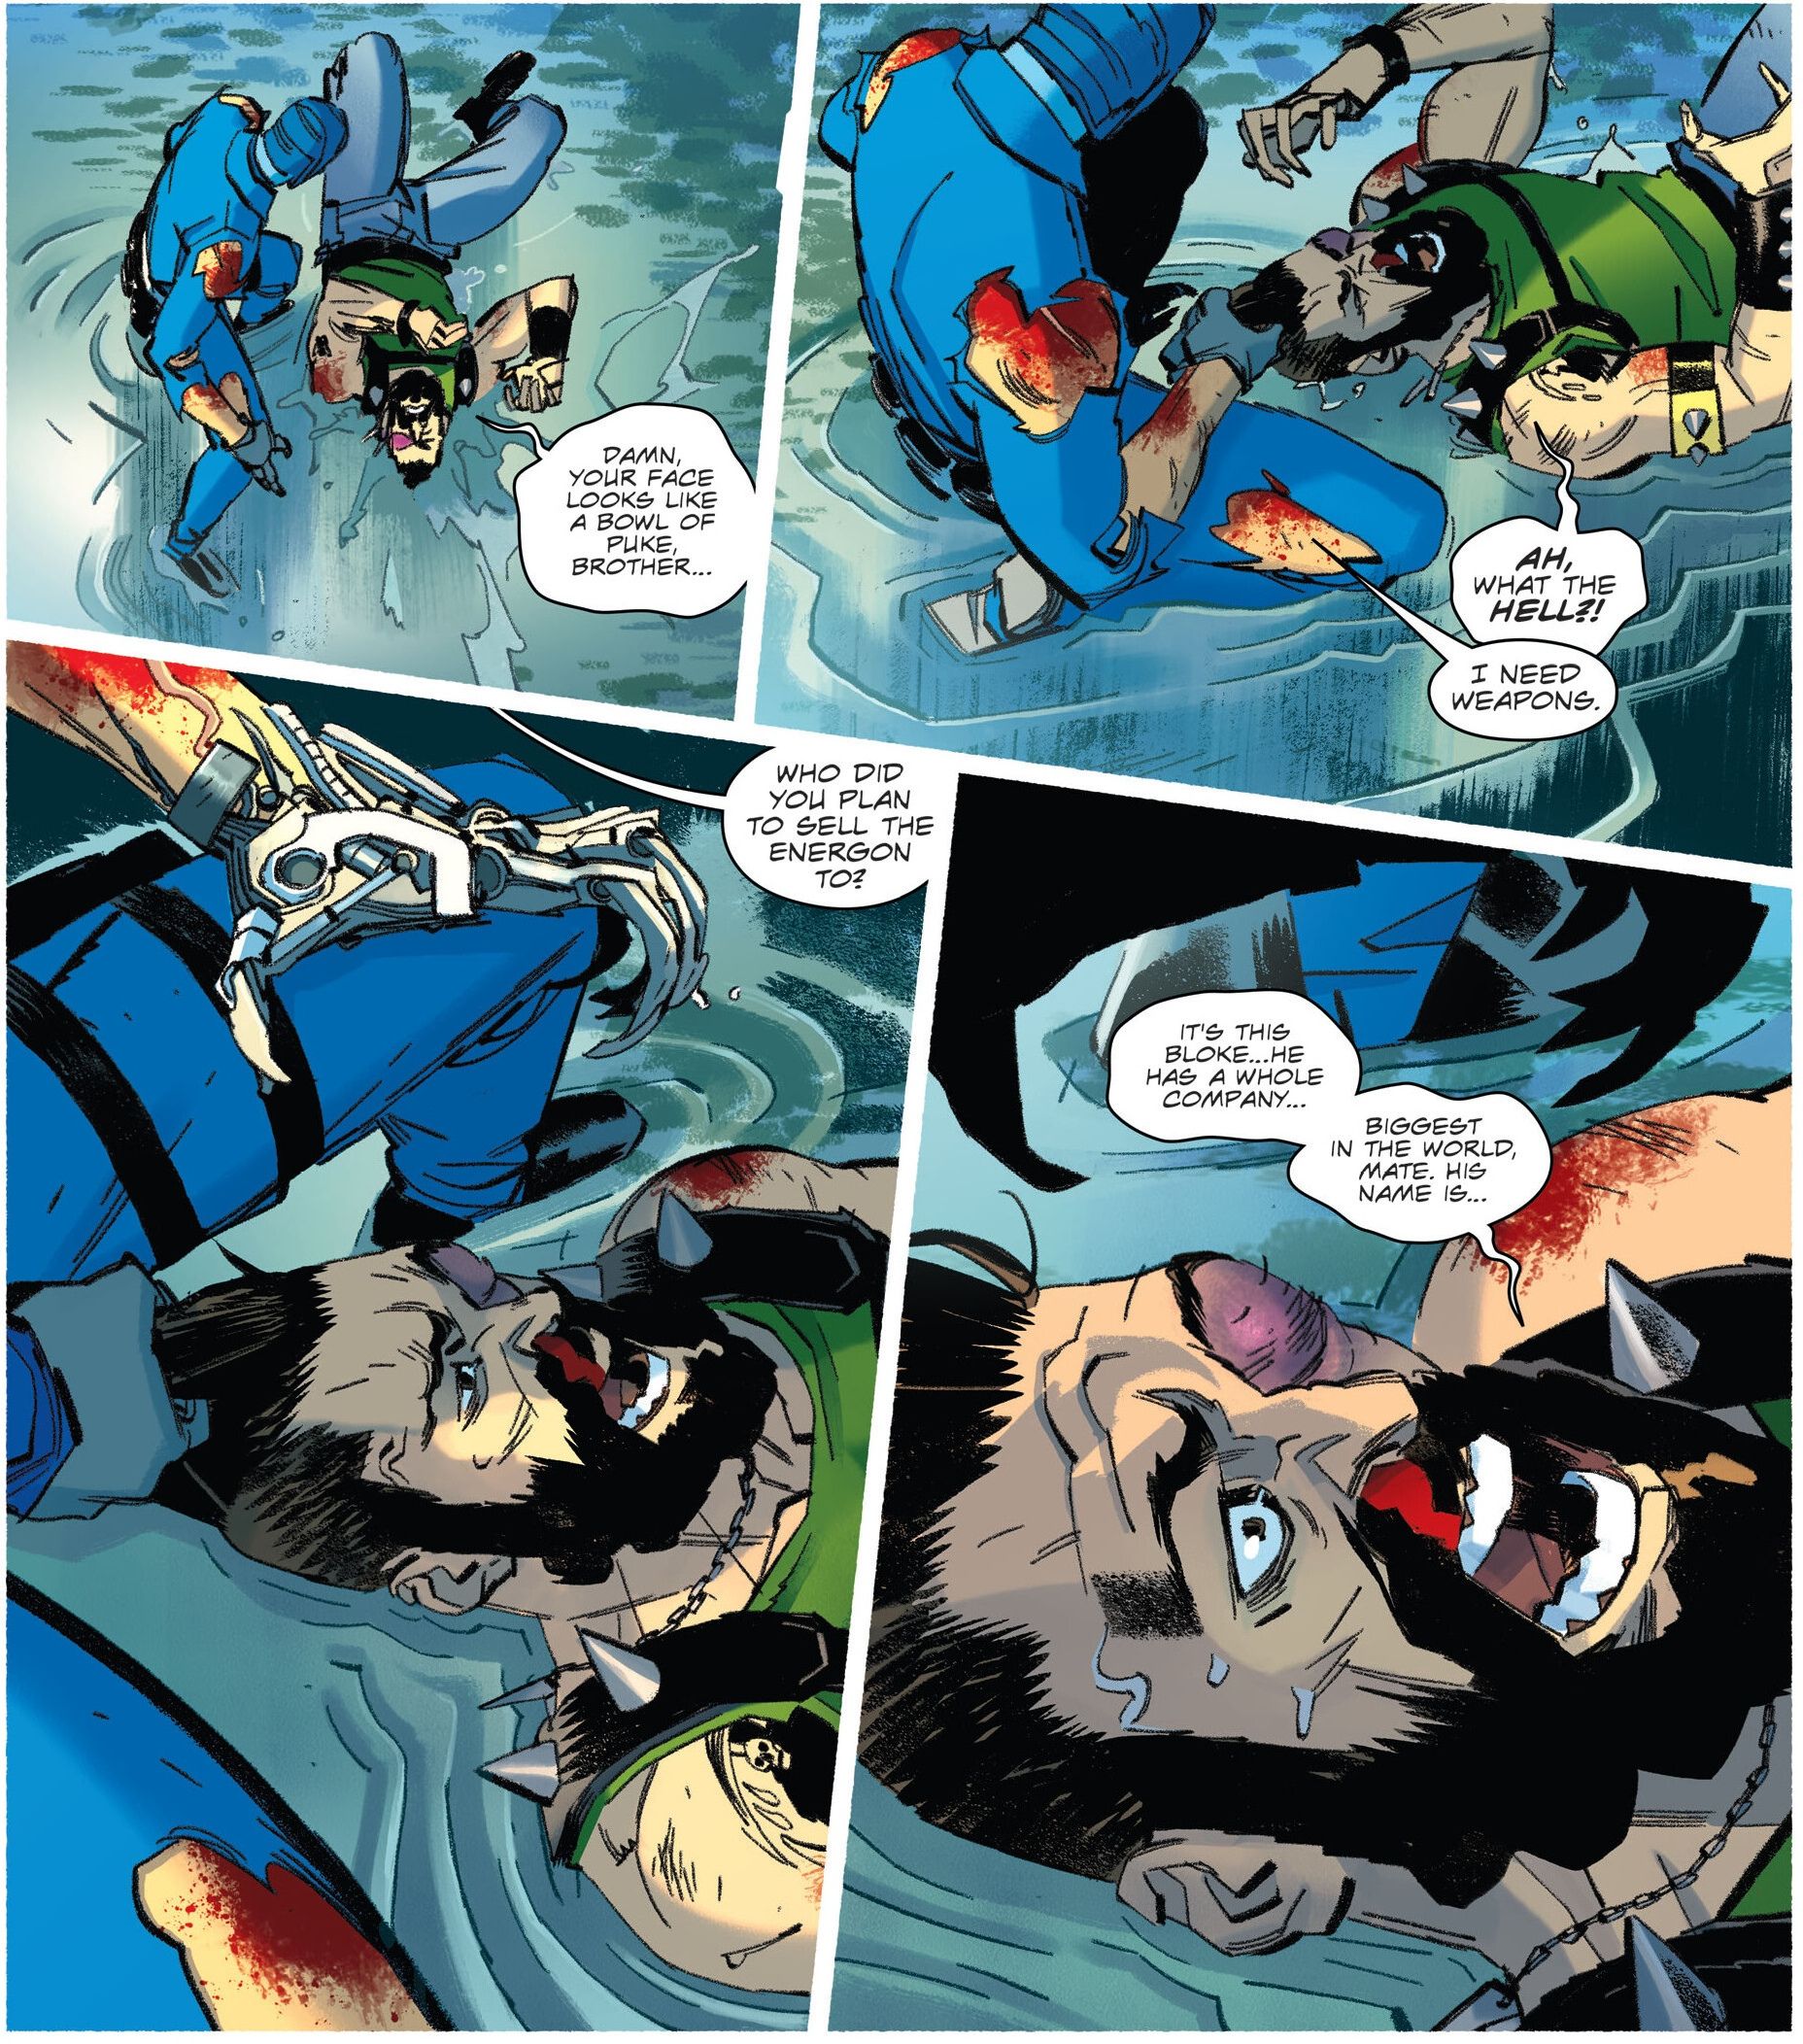 Cobra Commander #4, the Commander tortures Ripper for information